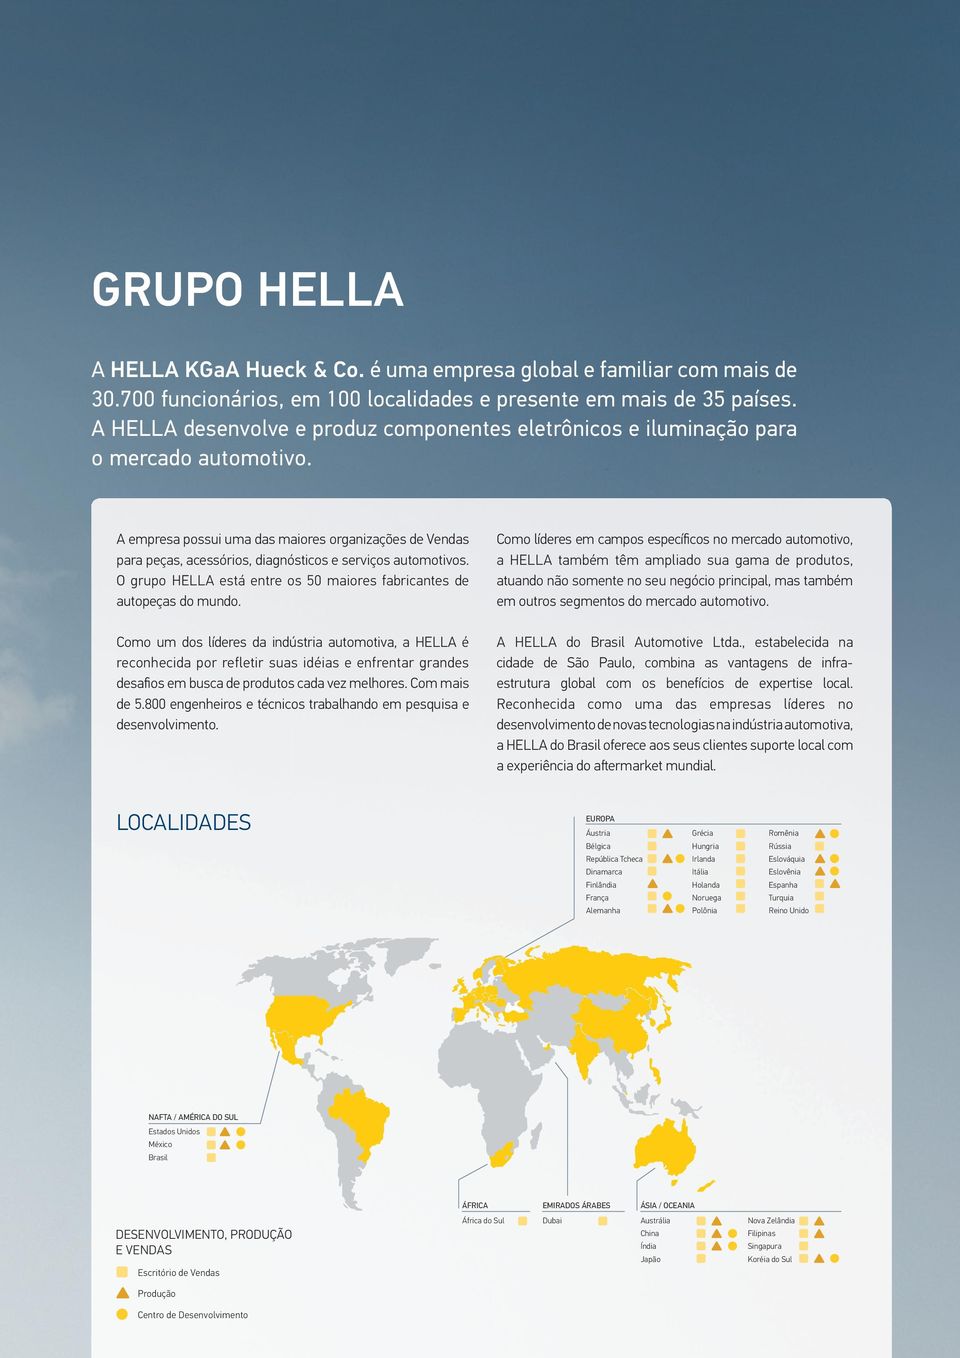 A empresa possui uma das maiores organizações de Vendas para peças, acessórios, diagnósticos e serviços automotivos. O grupo HELLA está entre os 50 maiores fabricantes de autopeças do mundo.